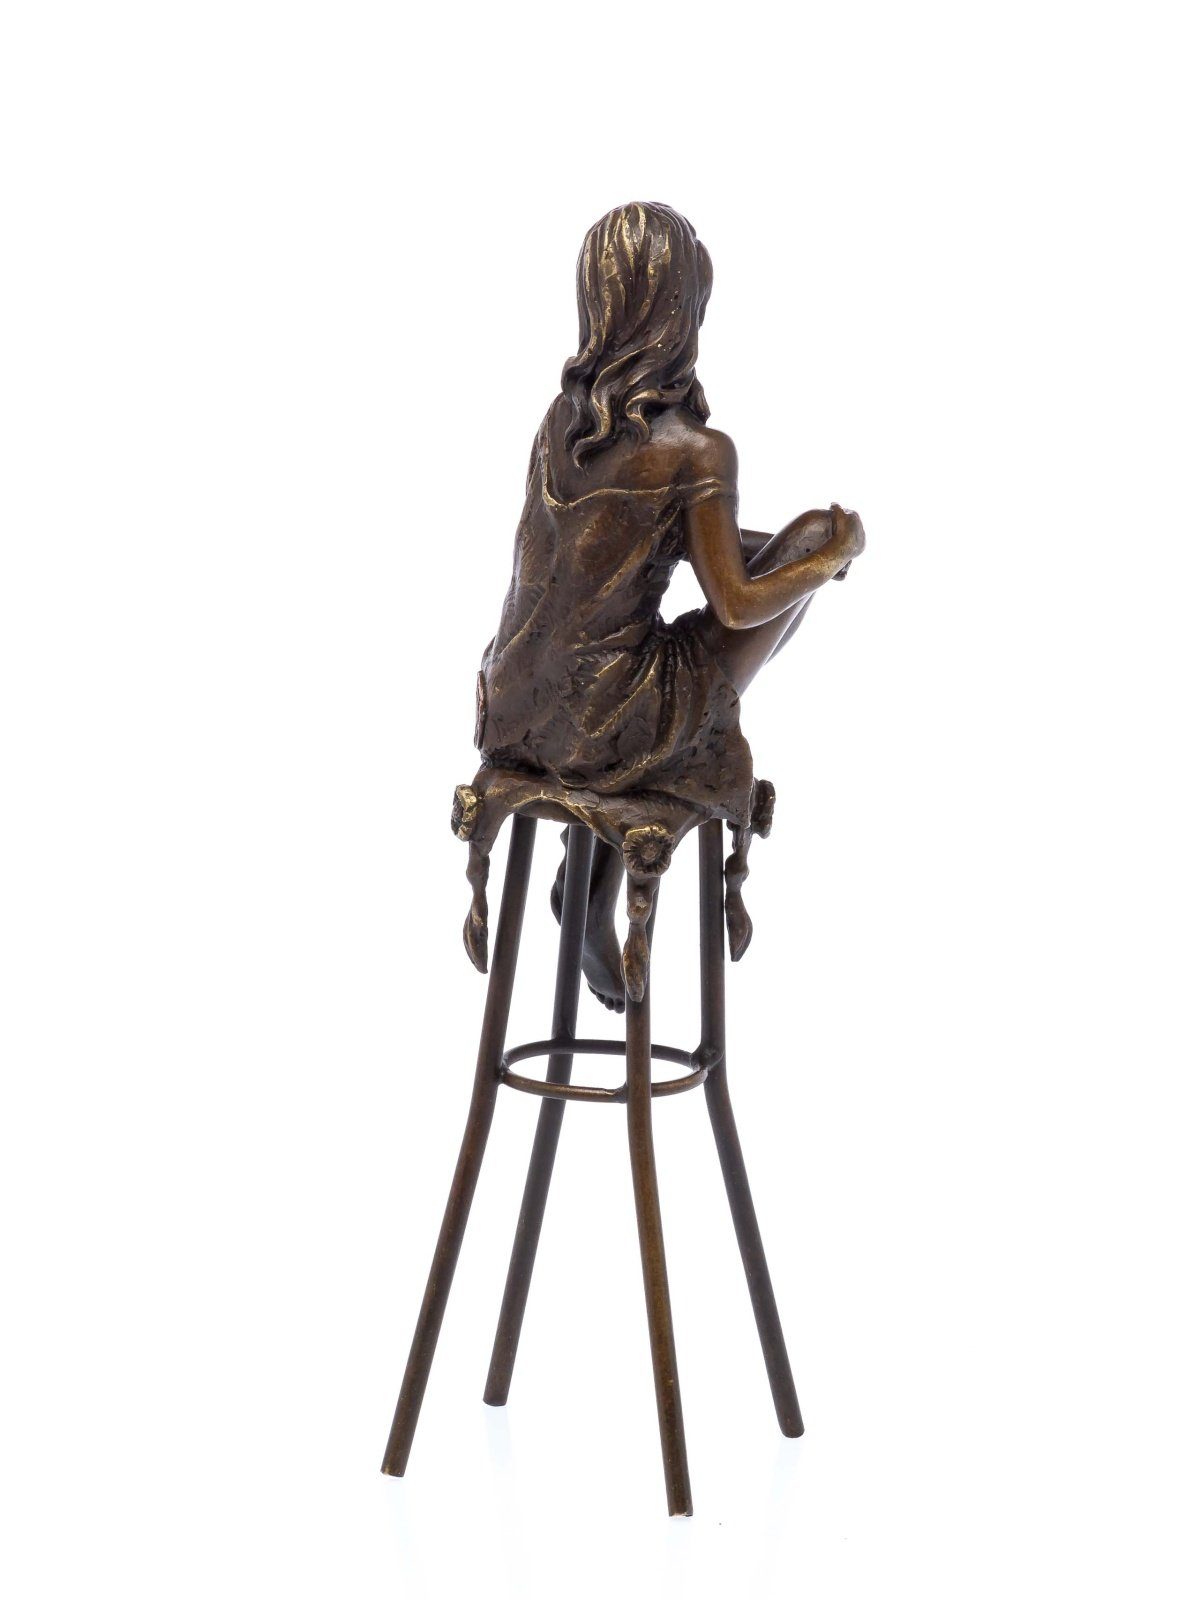 scu auf Barhocker Akt Aubaho Skulptur Bronzefigur erotische Bronze Frau Skulptur Kunst